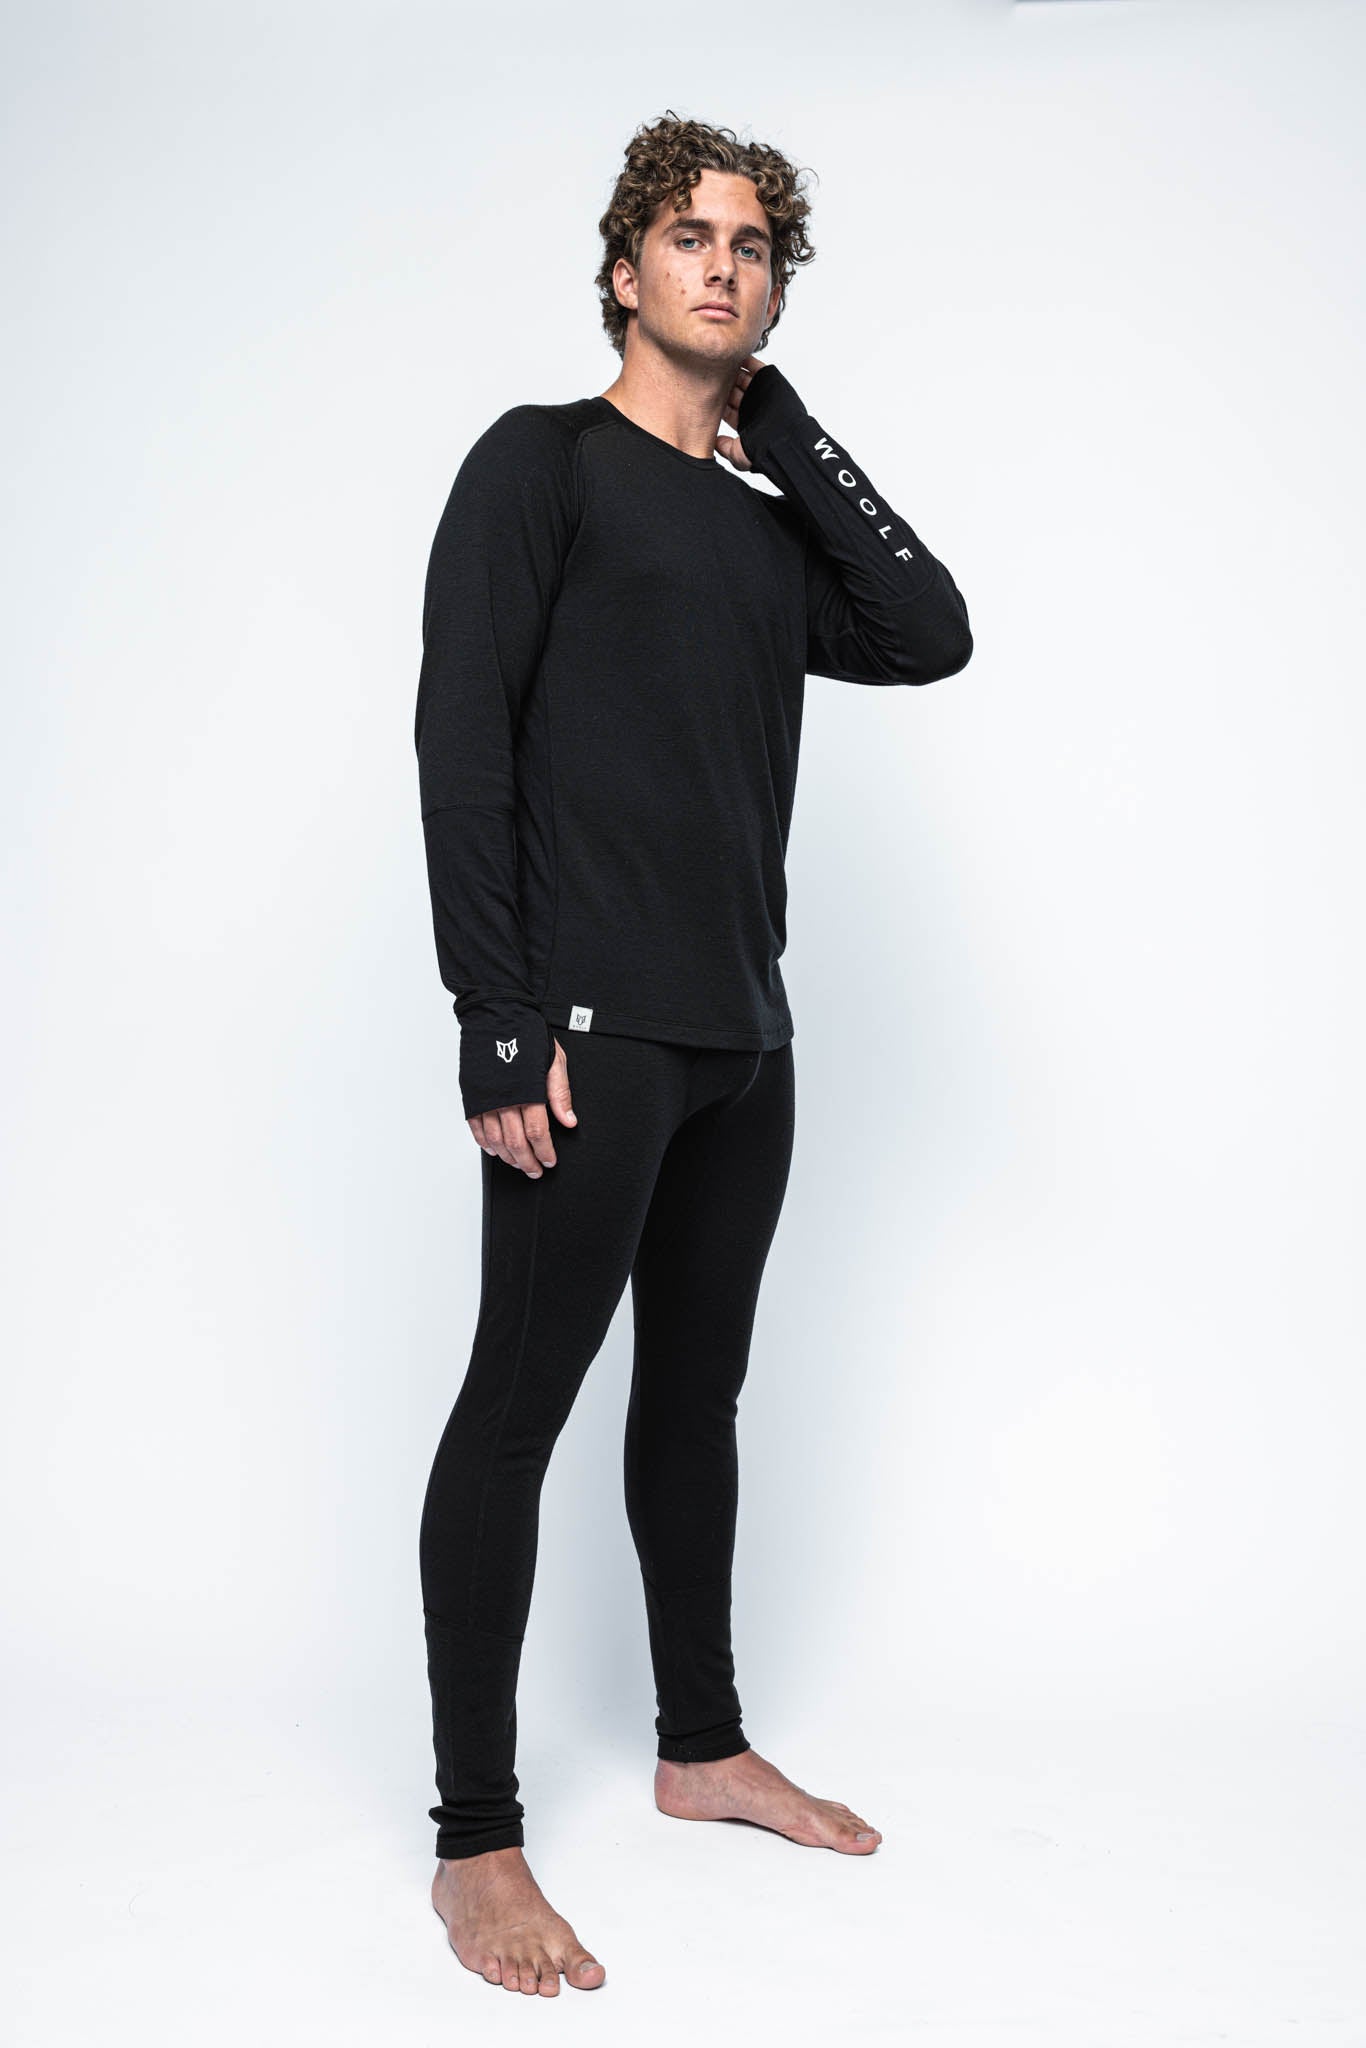 Wool leggings - Black - Ladies | H&M